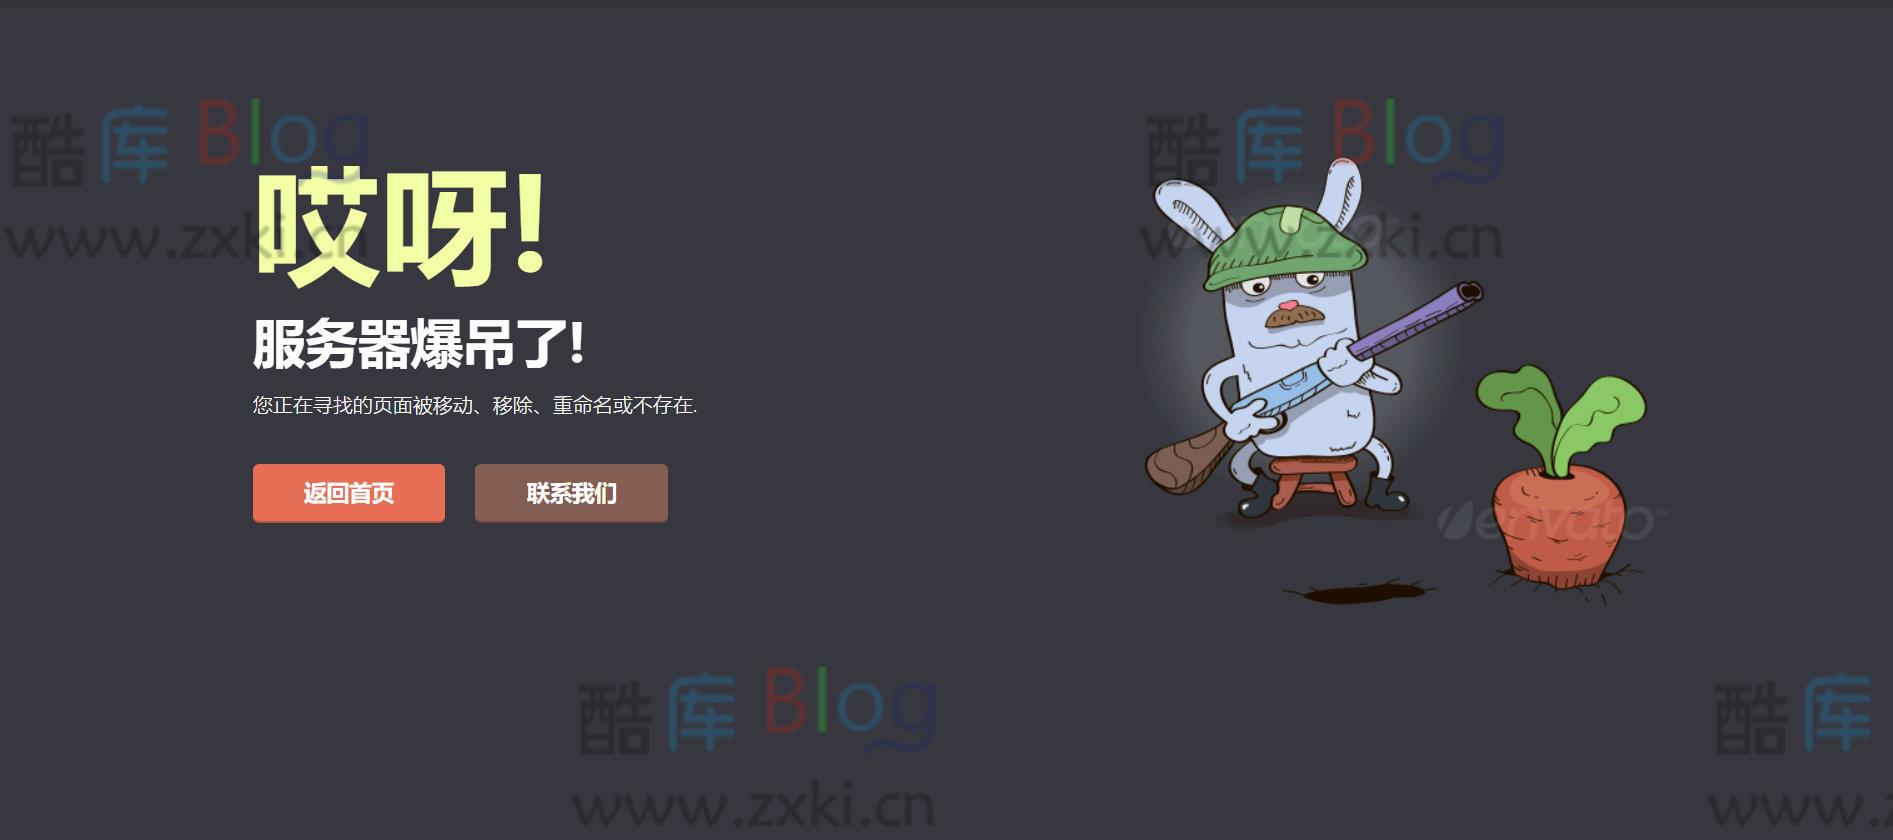 守萝卜的兔子404错误页面源码 第2张插图